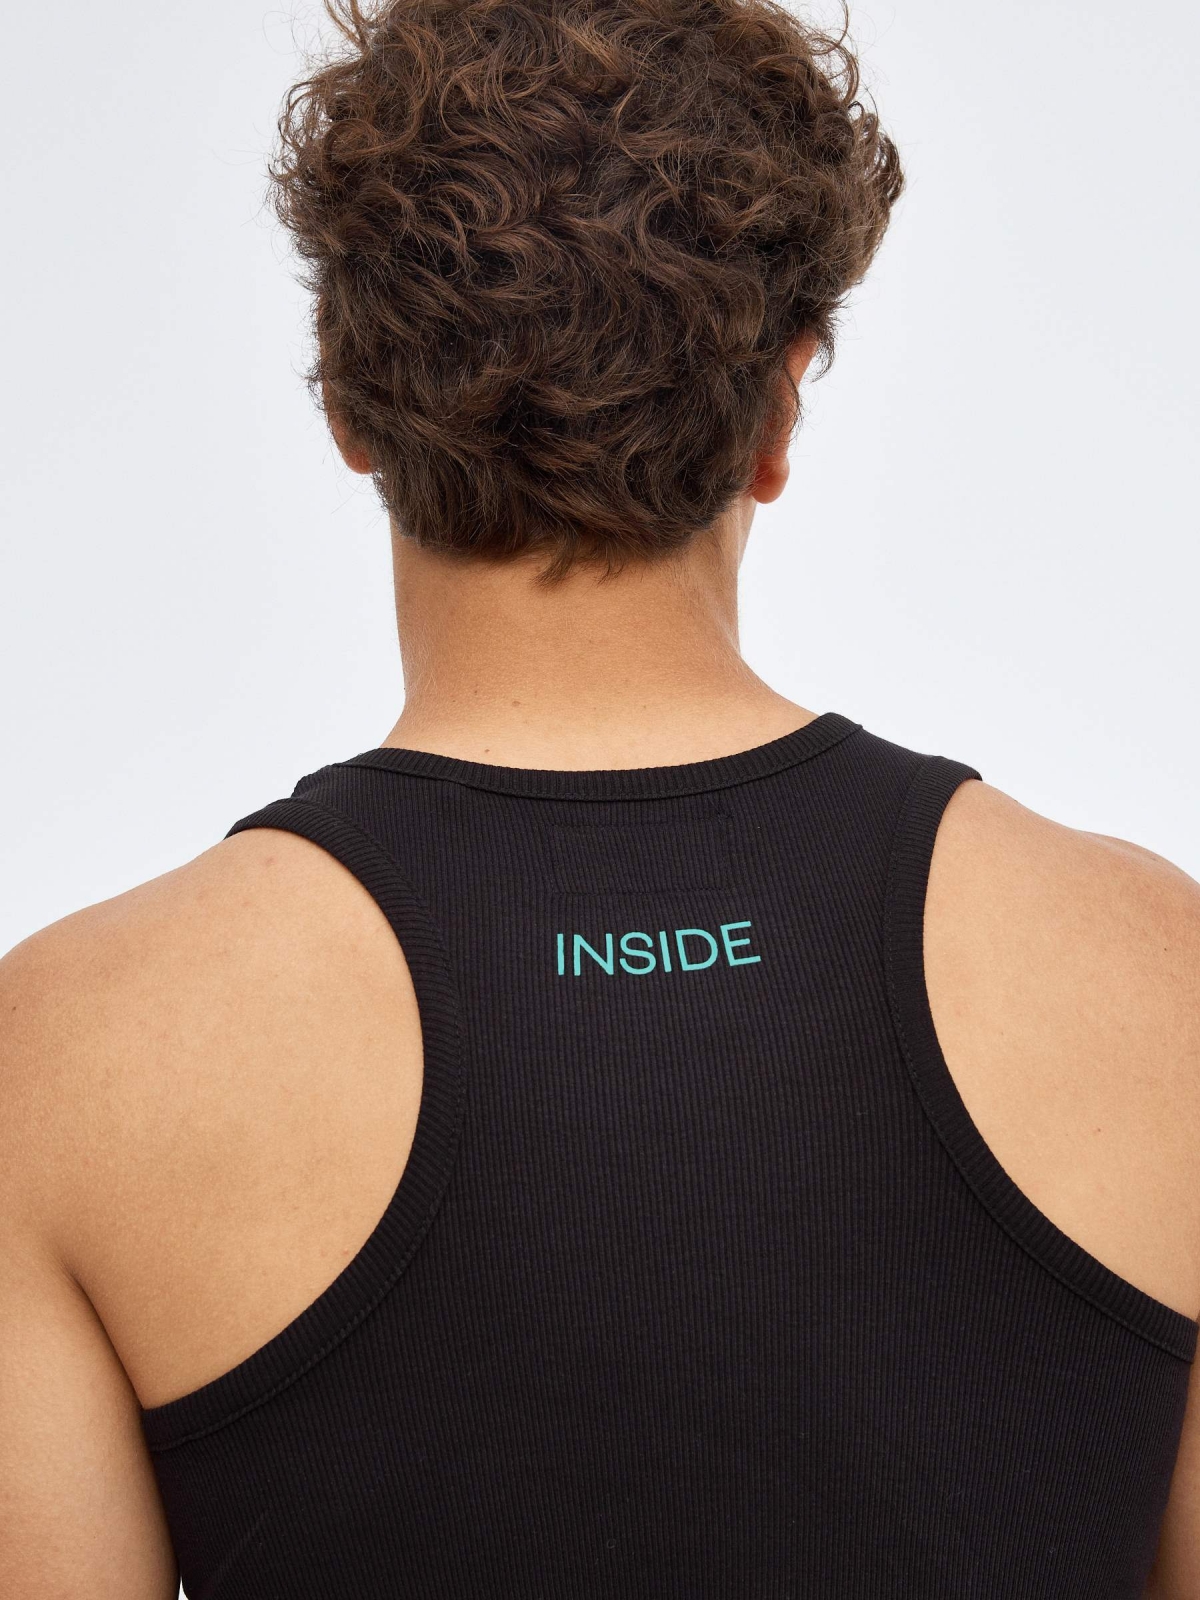 Camiseta básica espalda nadadora negro vista detalle